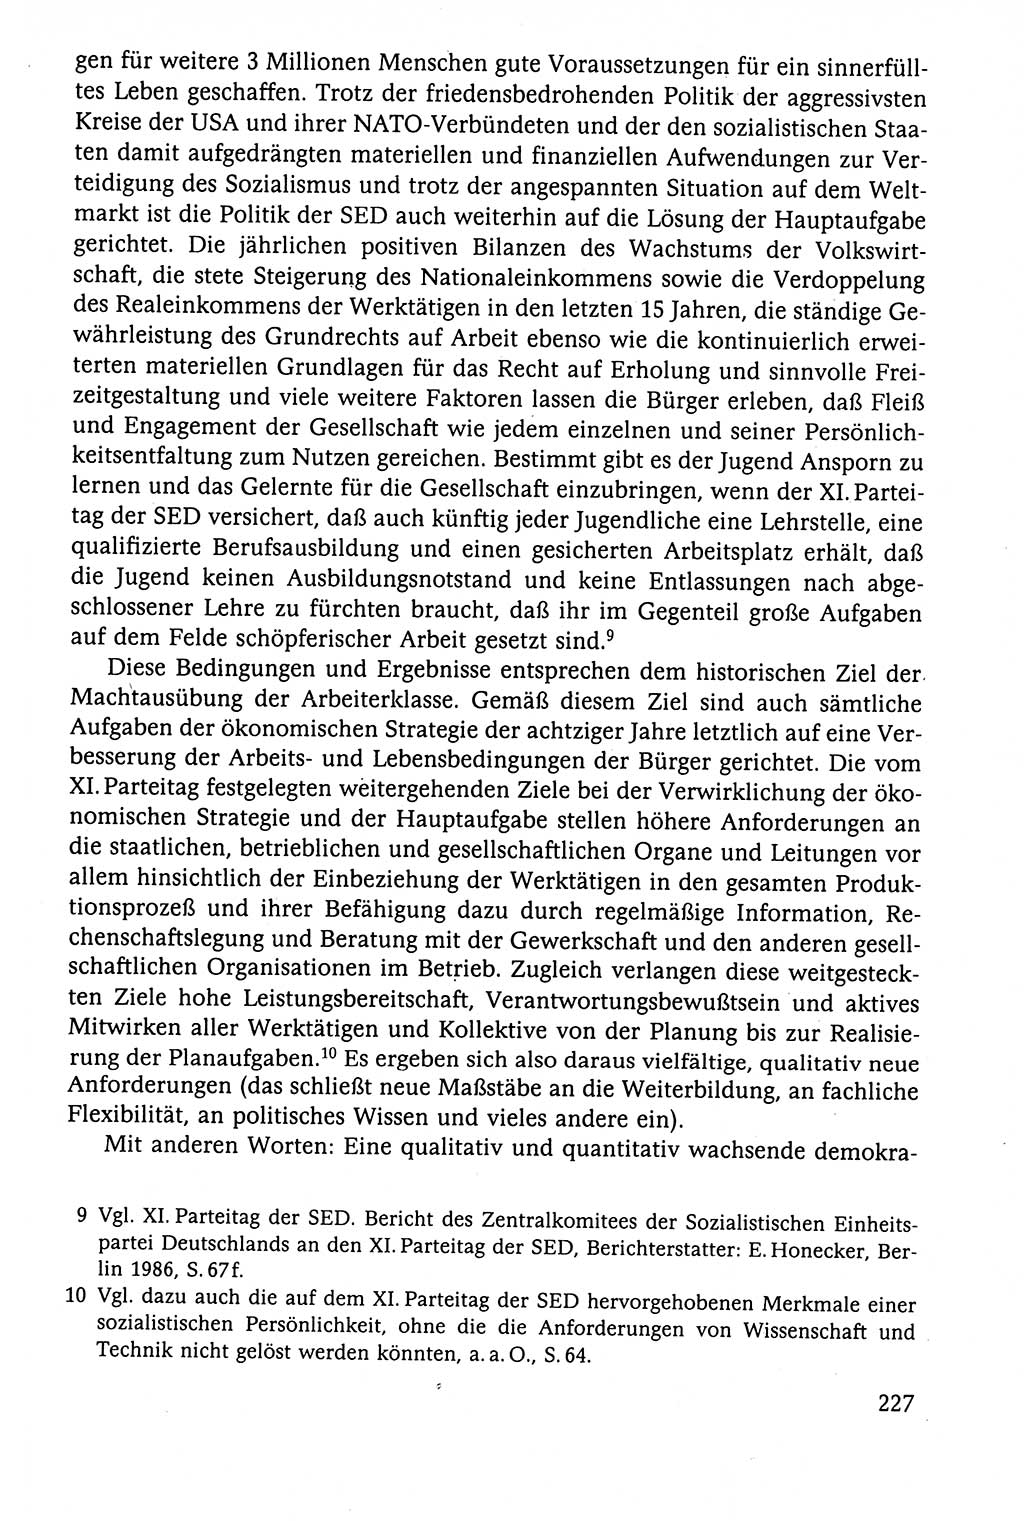 Der Staat im politischen System der DDR (Deutsche Demokratische Republik) 1986, Seite 227 (St. pol. Sys. DDR 1986, S. 227)